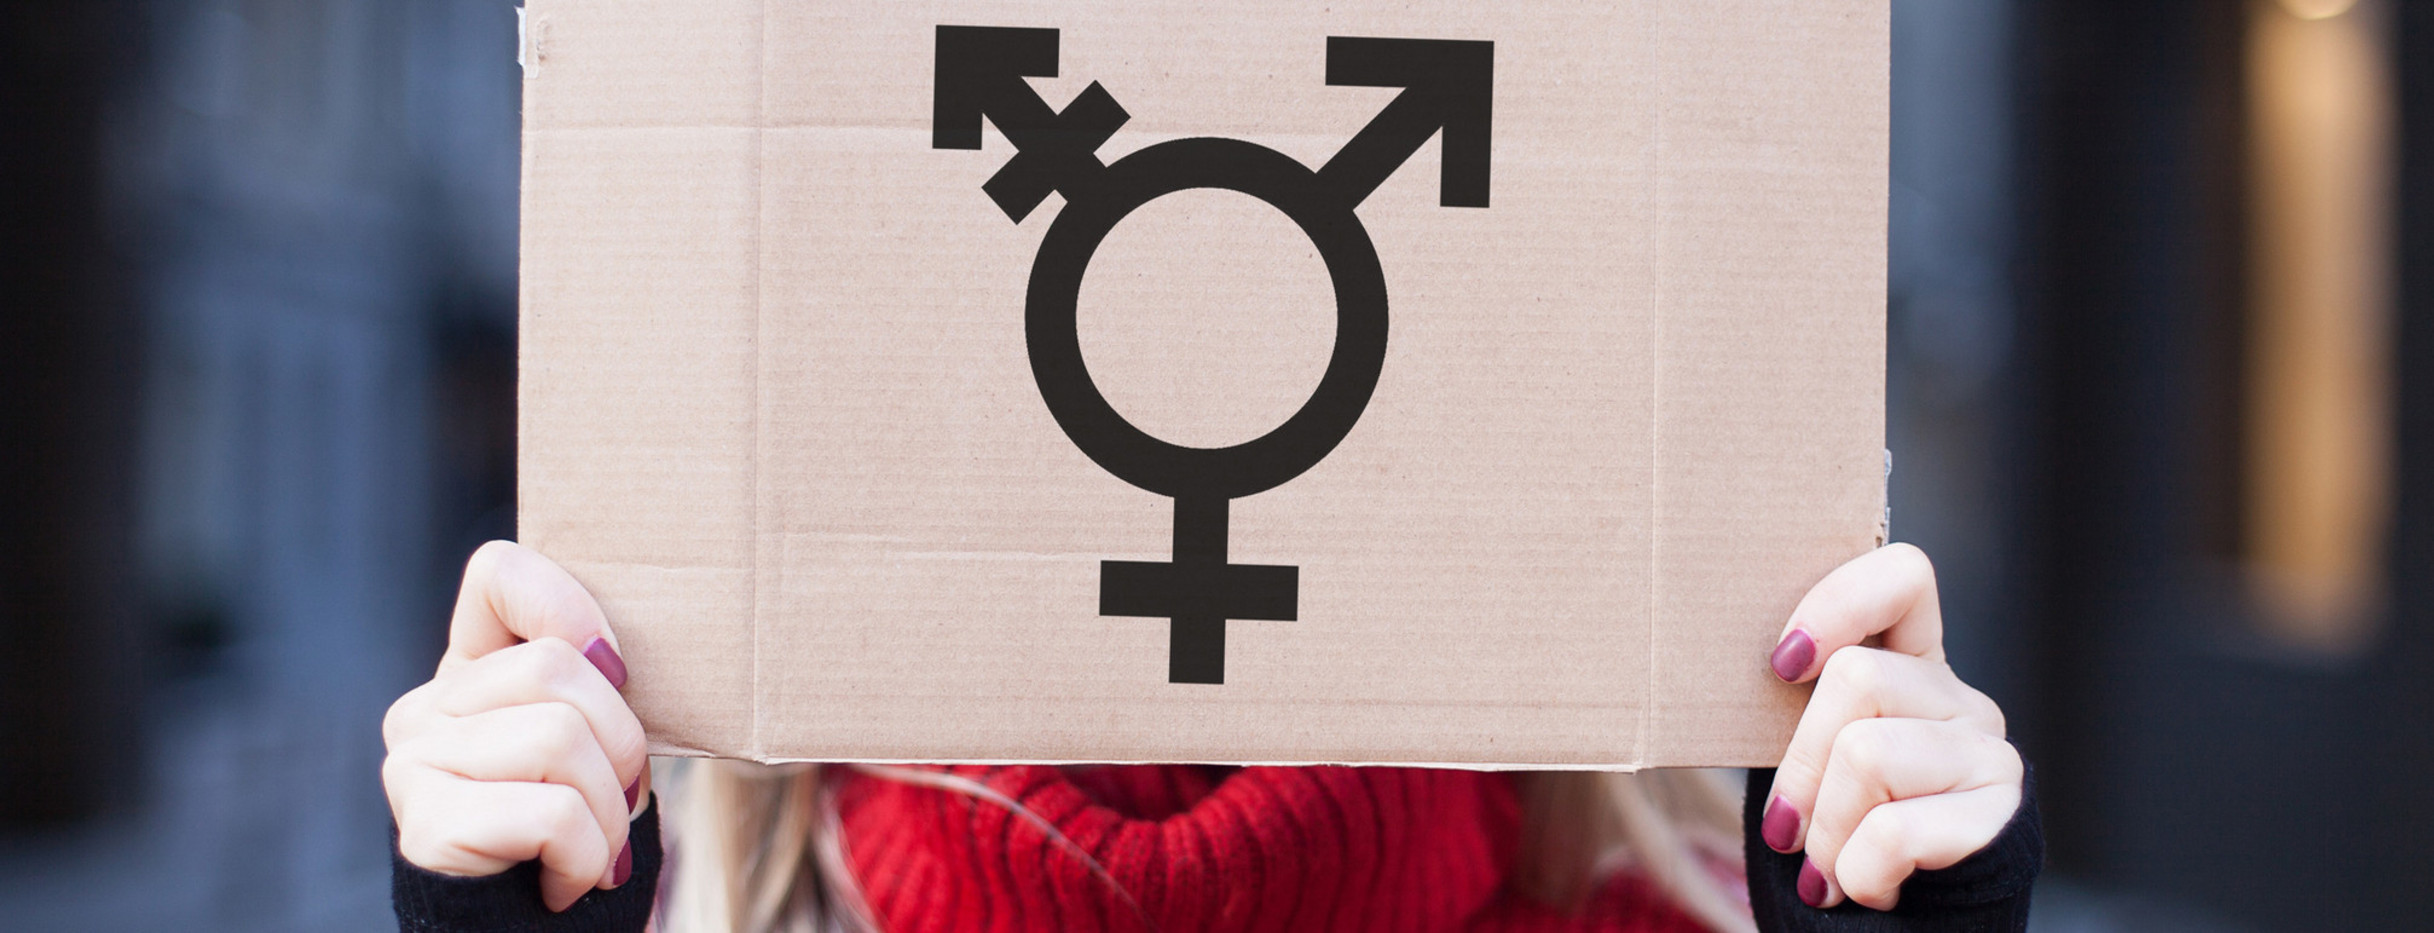 Das Symbol Transgender auf einem Pappteller